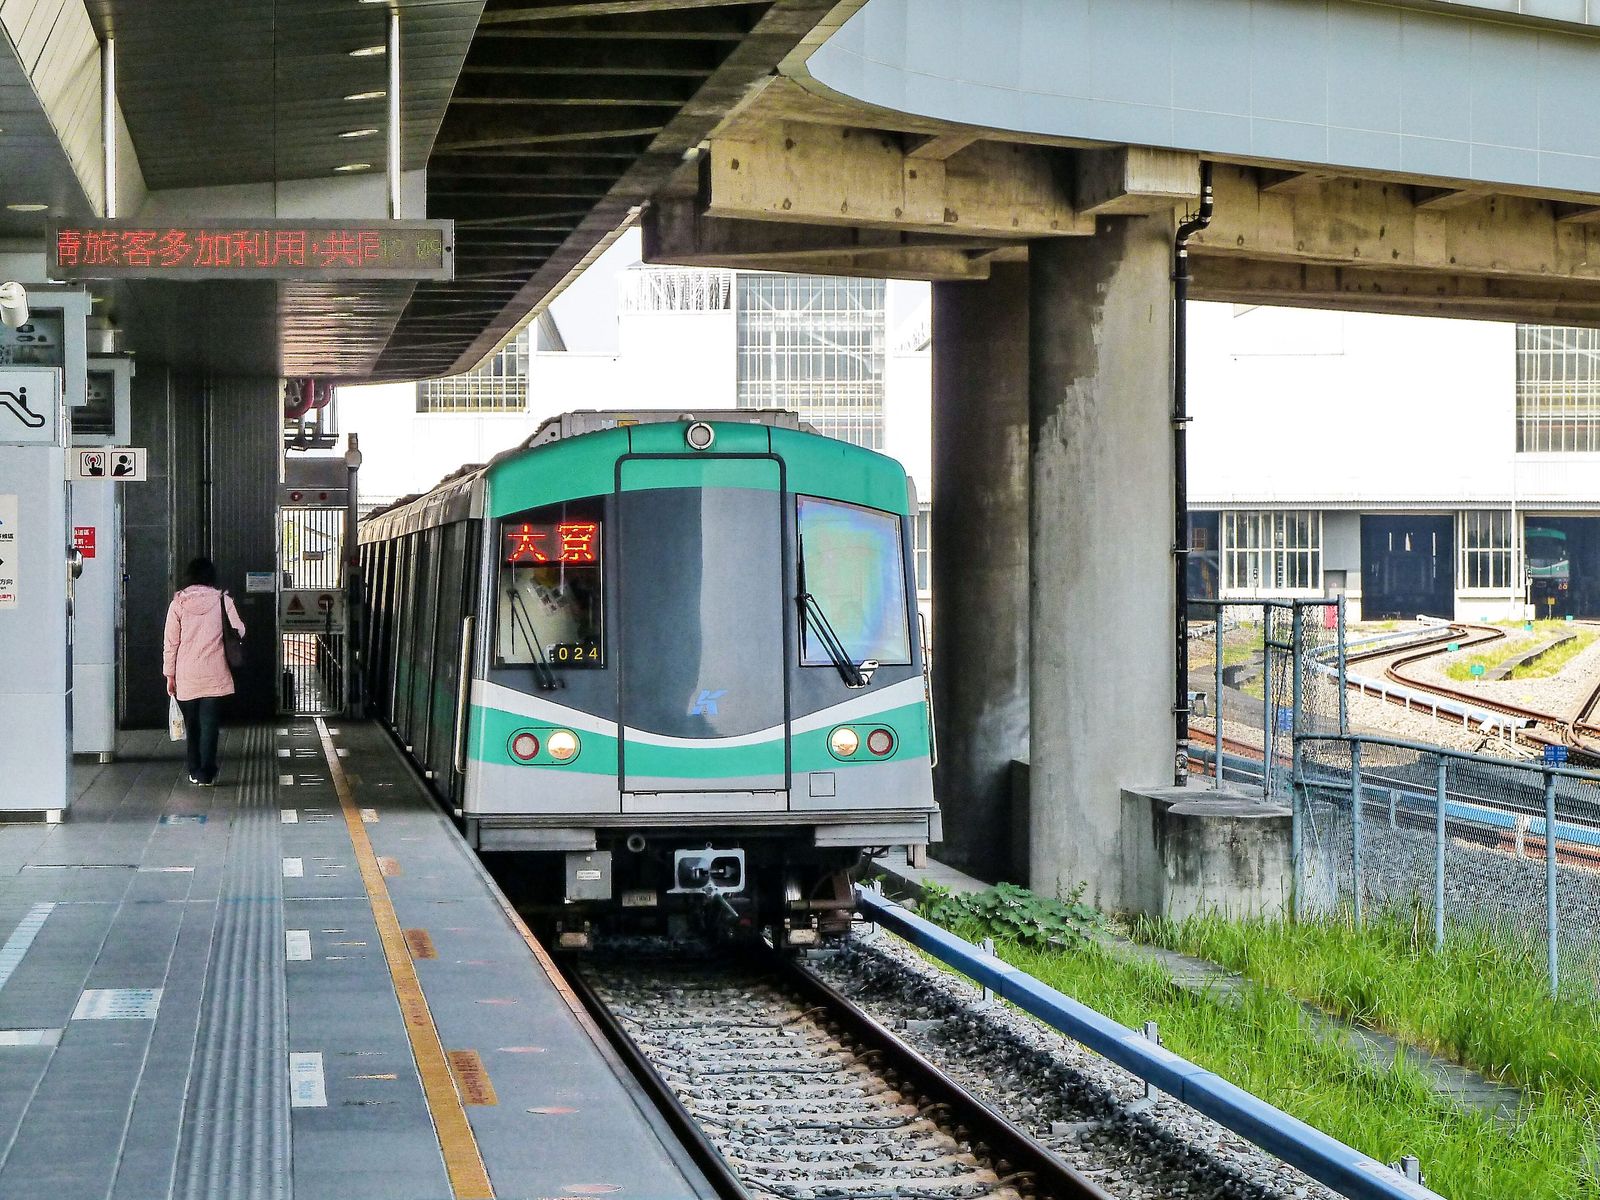 Für das regelspurige Metro-System mit momentan zwei Linien in Kaohsiung lieferte Siemens die Fahrzeuge.